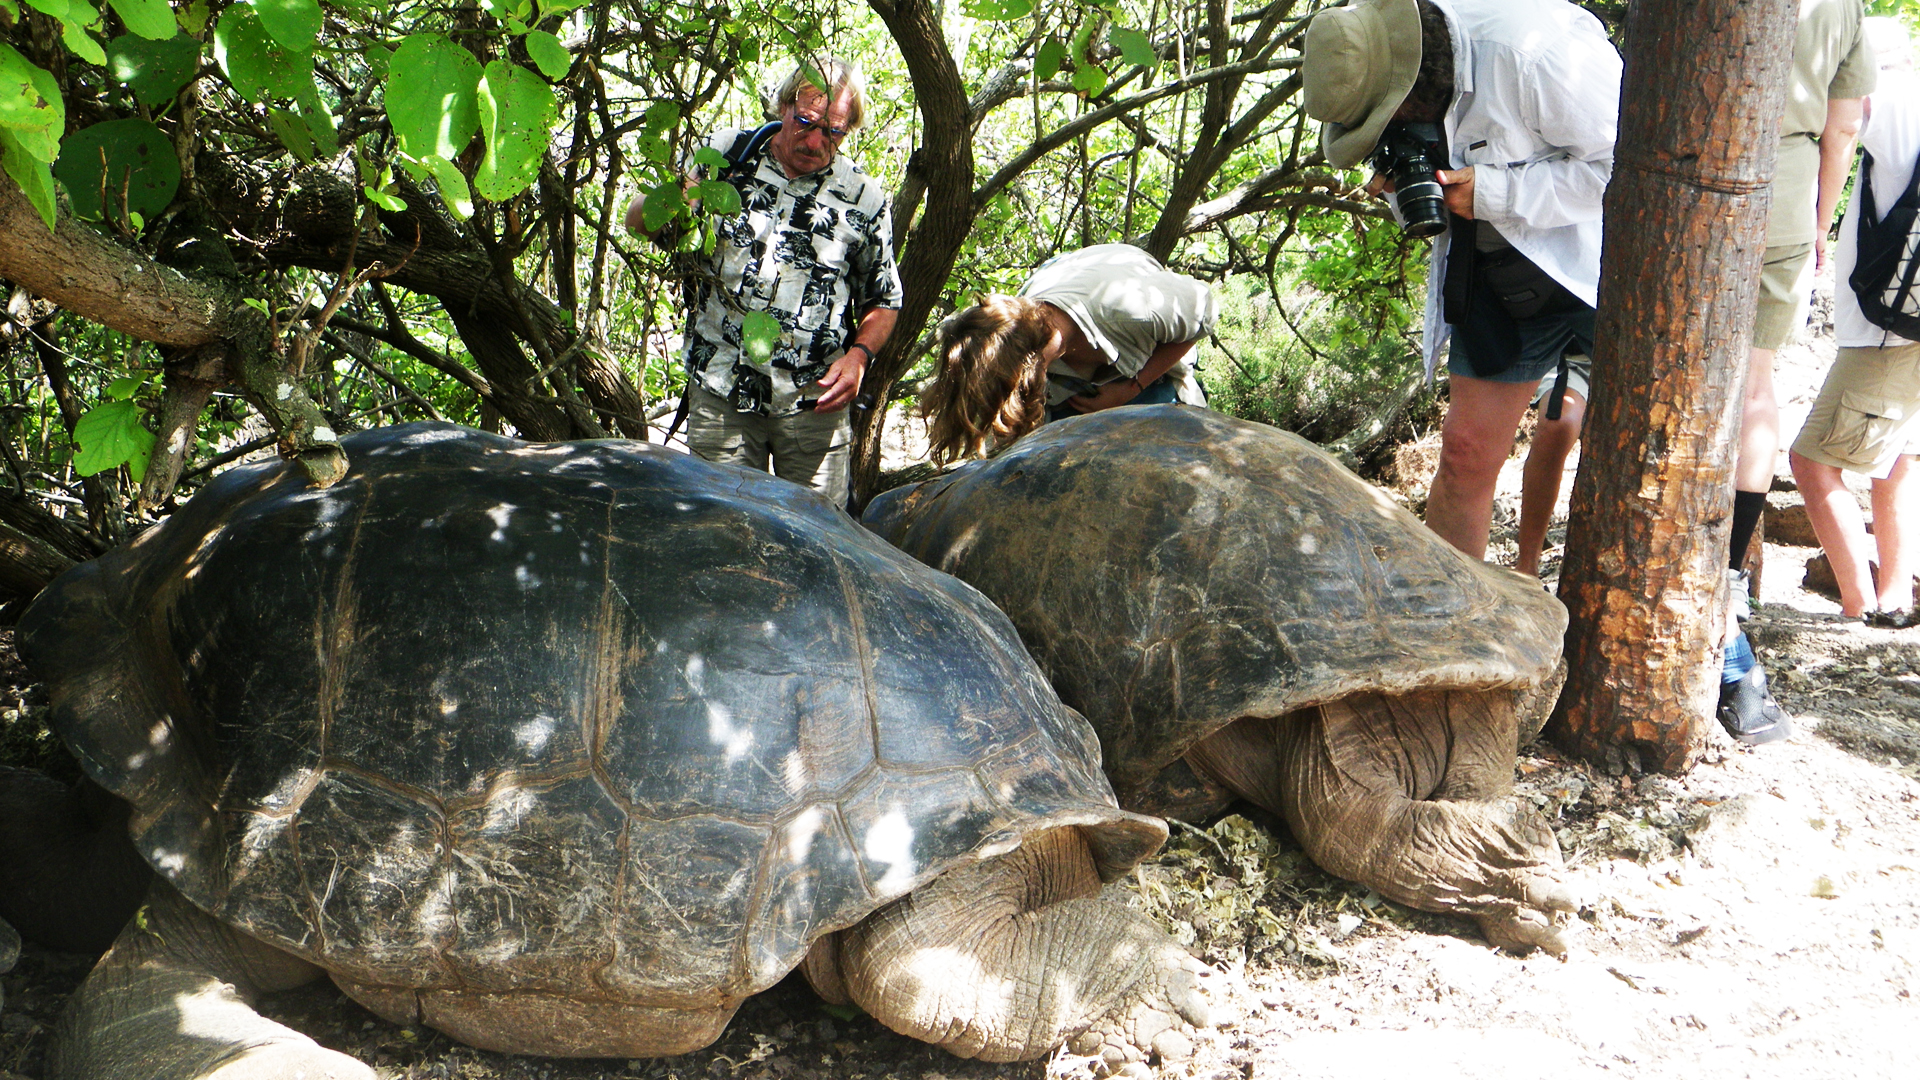 wp-content/uploads/itineraries/Galapagos/032610galapagos_charlesdarwin_tortoise_people (2).JPG